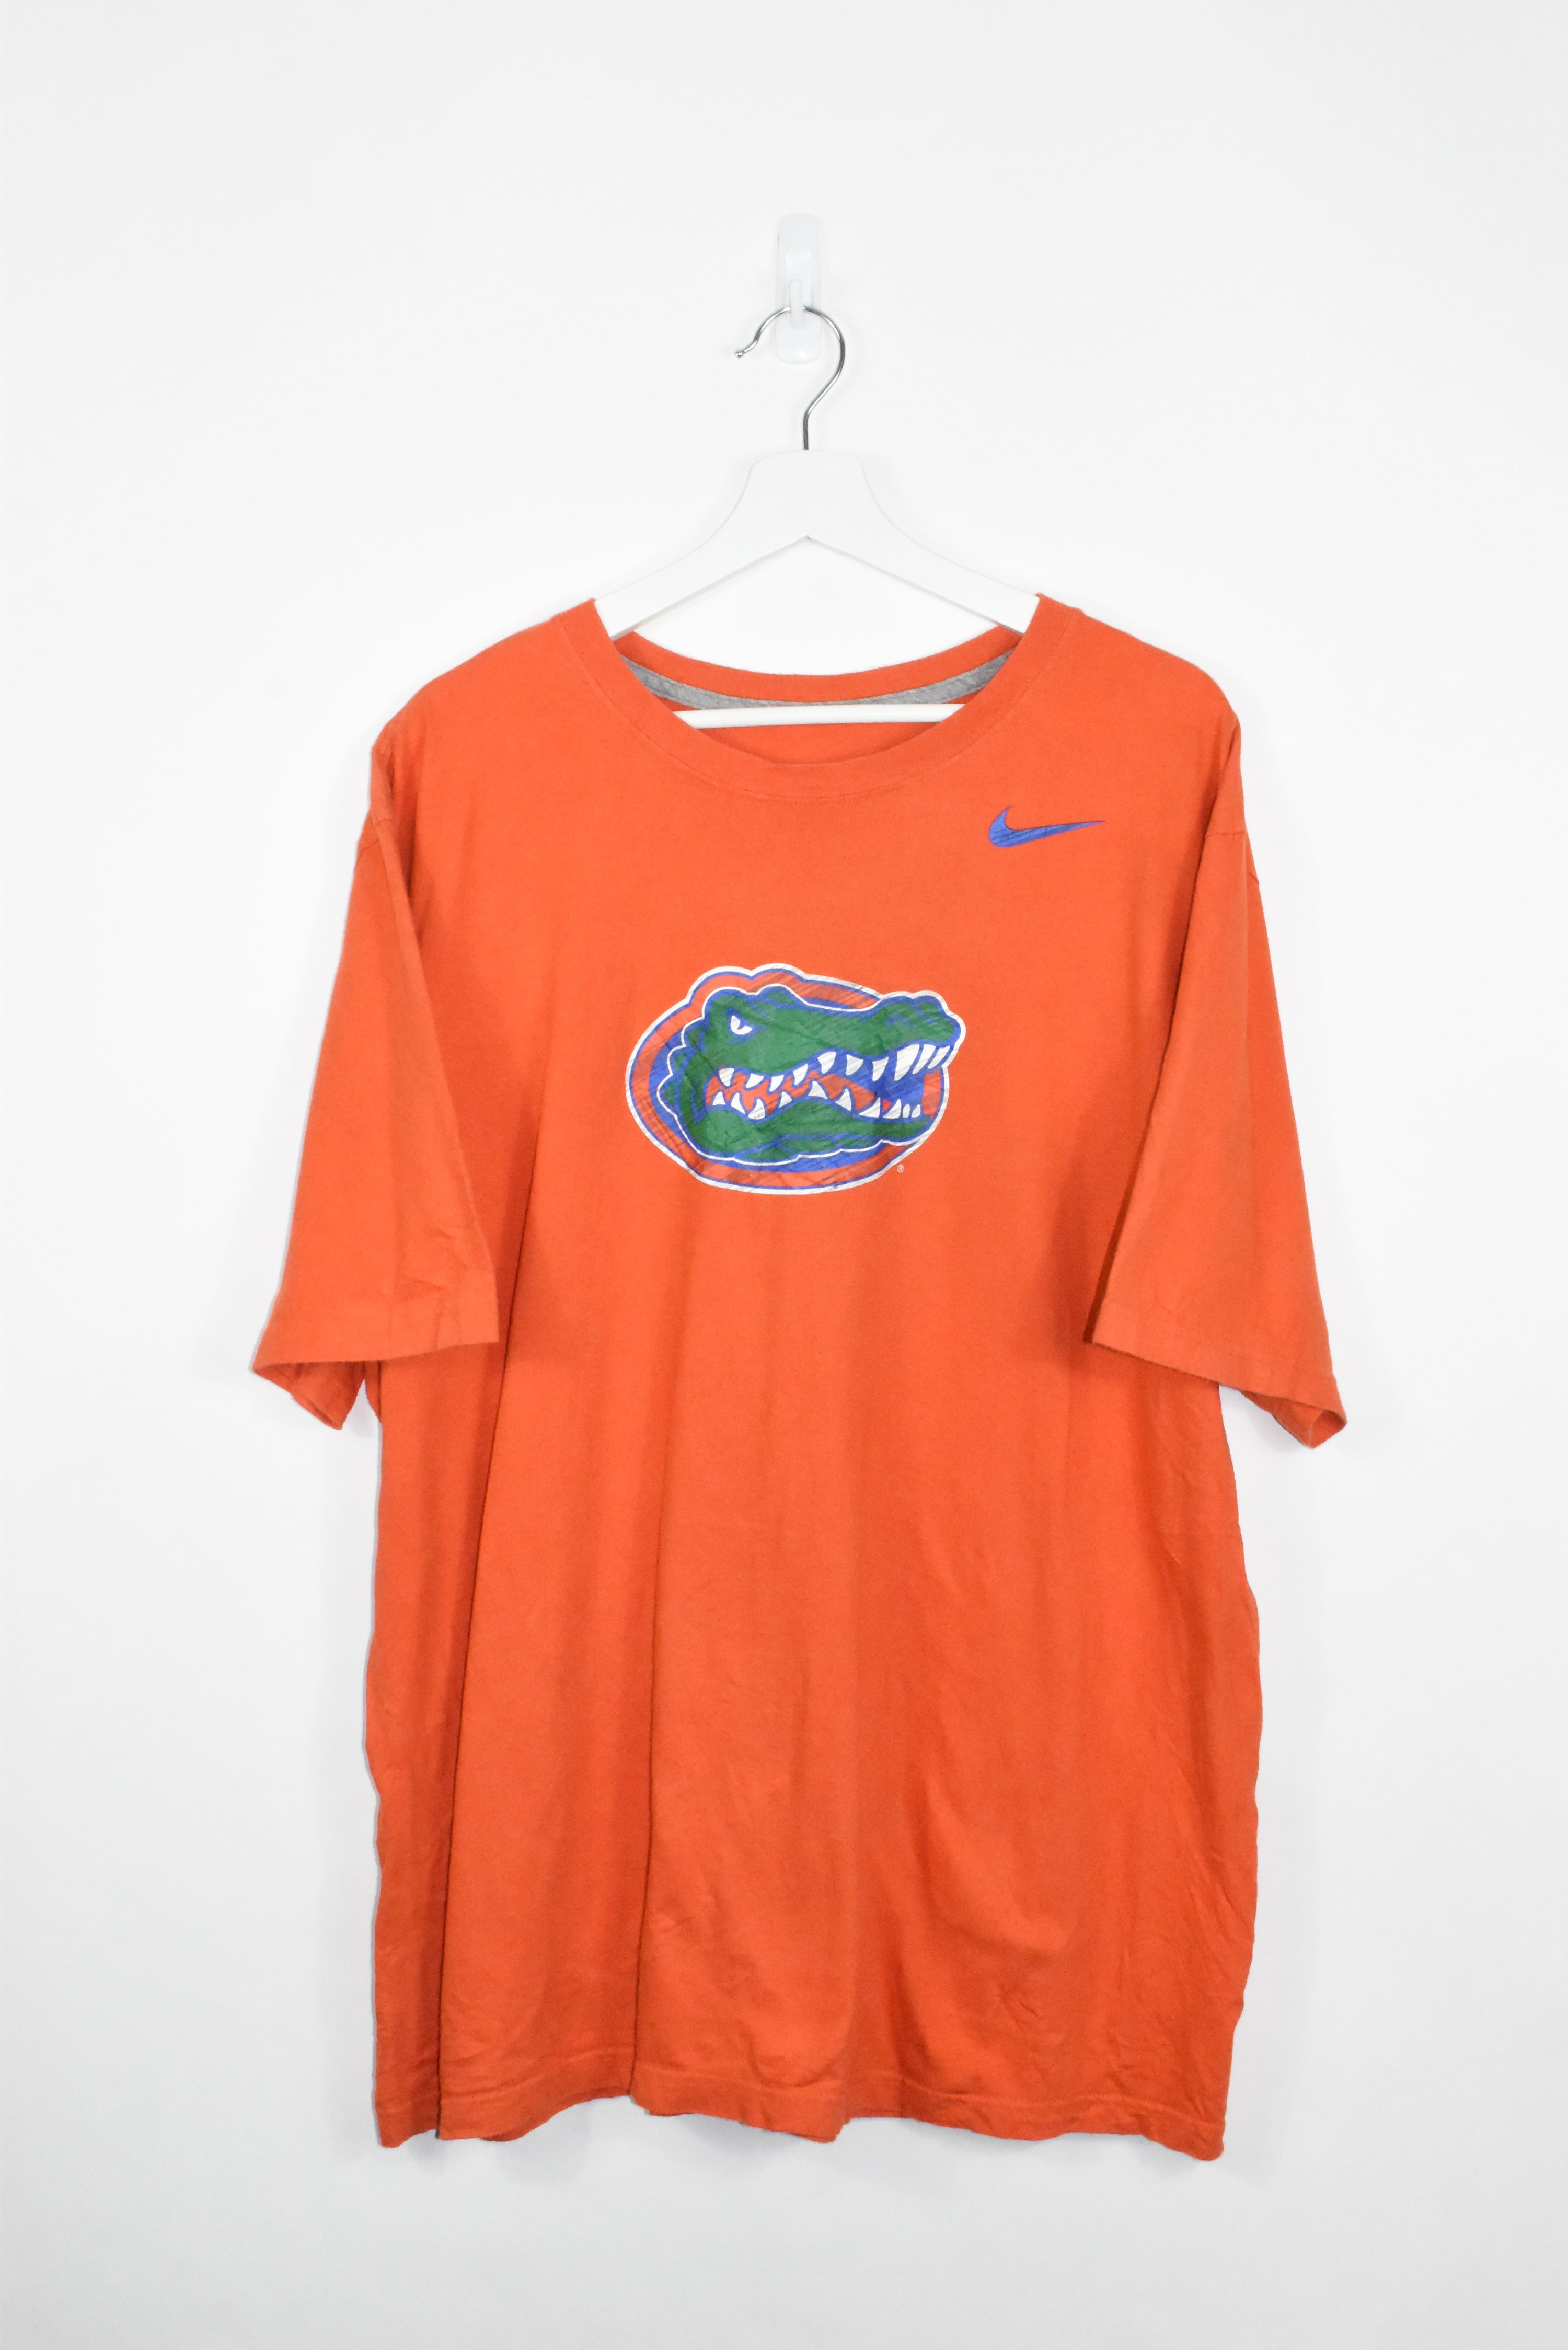 Vintage Nike Florida Gators Tee XLARGE